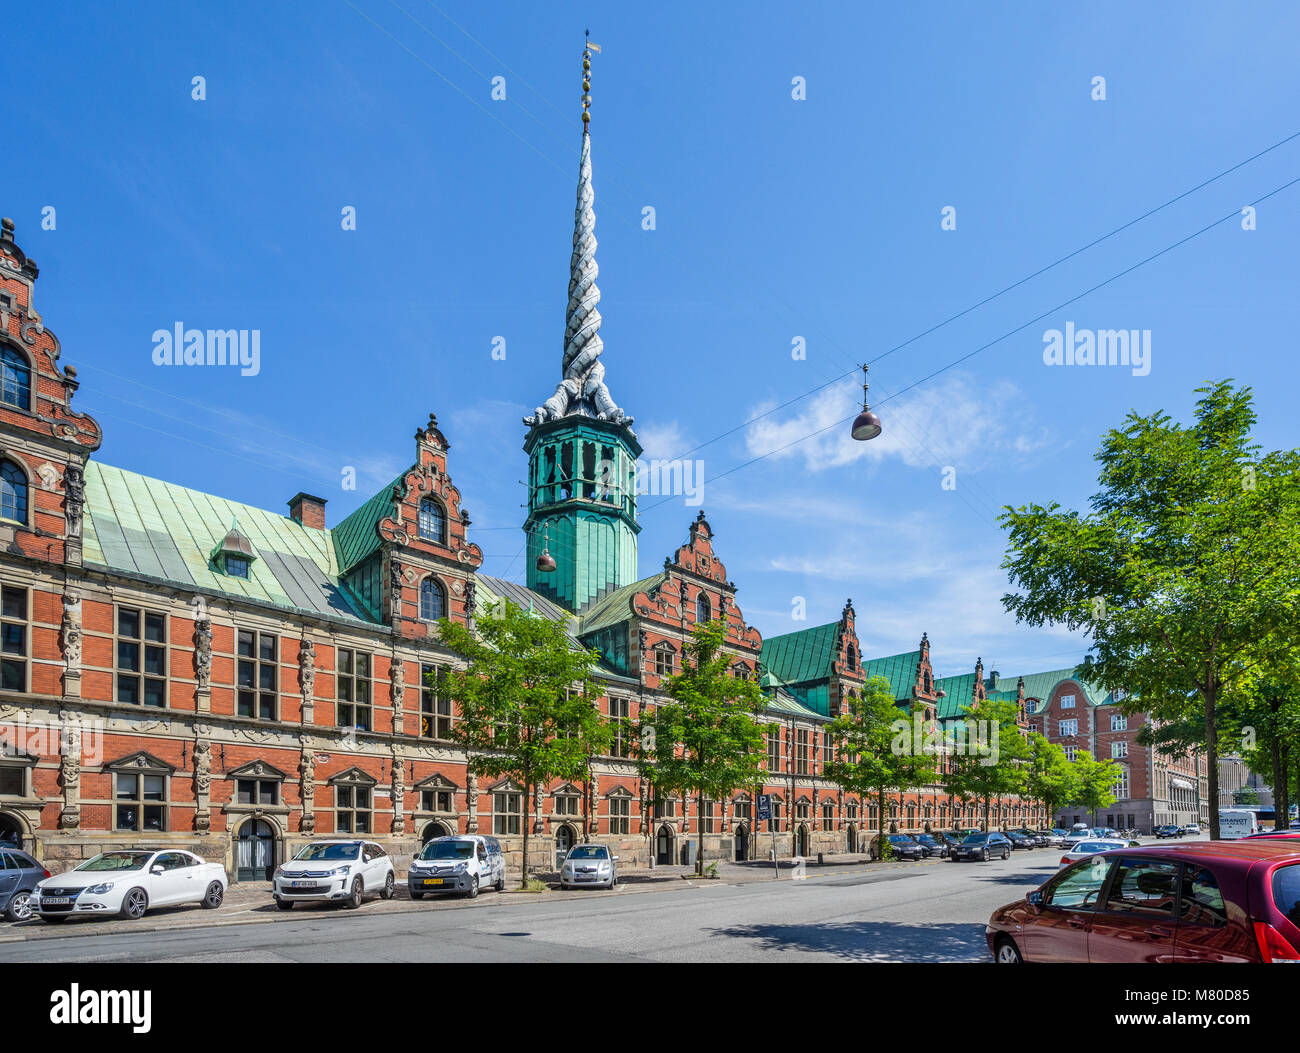 La Danimarca, la Zelanda, Copenaghen, vista della Børsen, Royal Exchange, l'ex borsa con il suo distintivo guglia, conformata come code di quattro dr Foto Stock